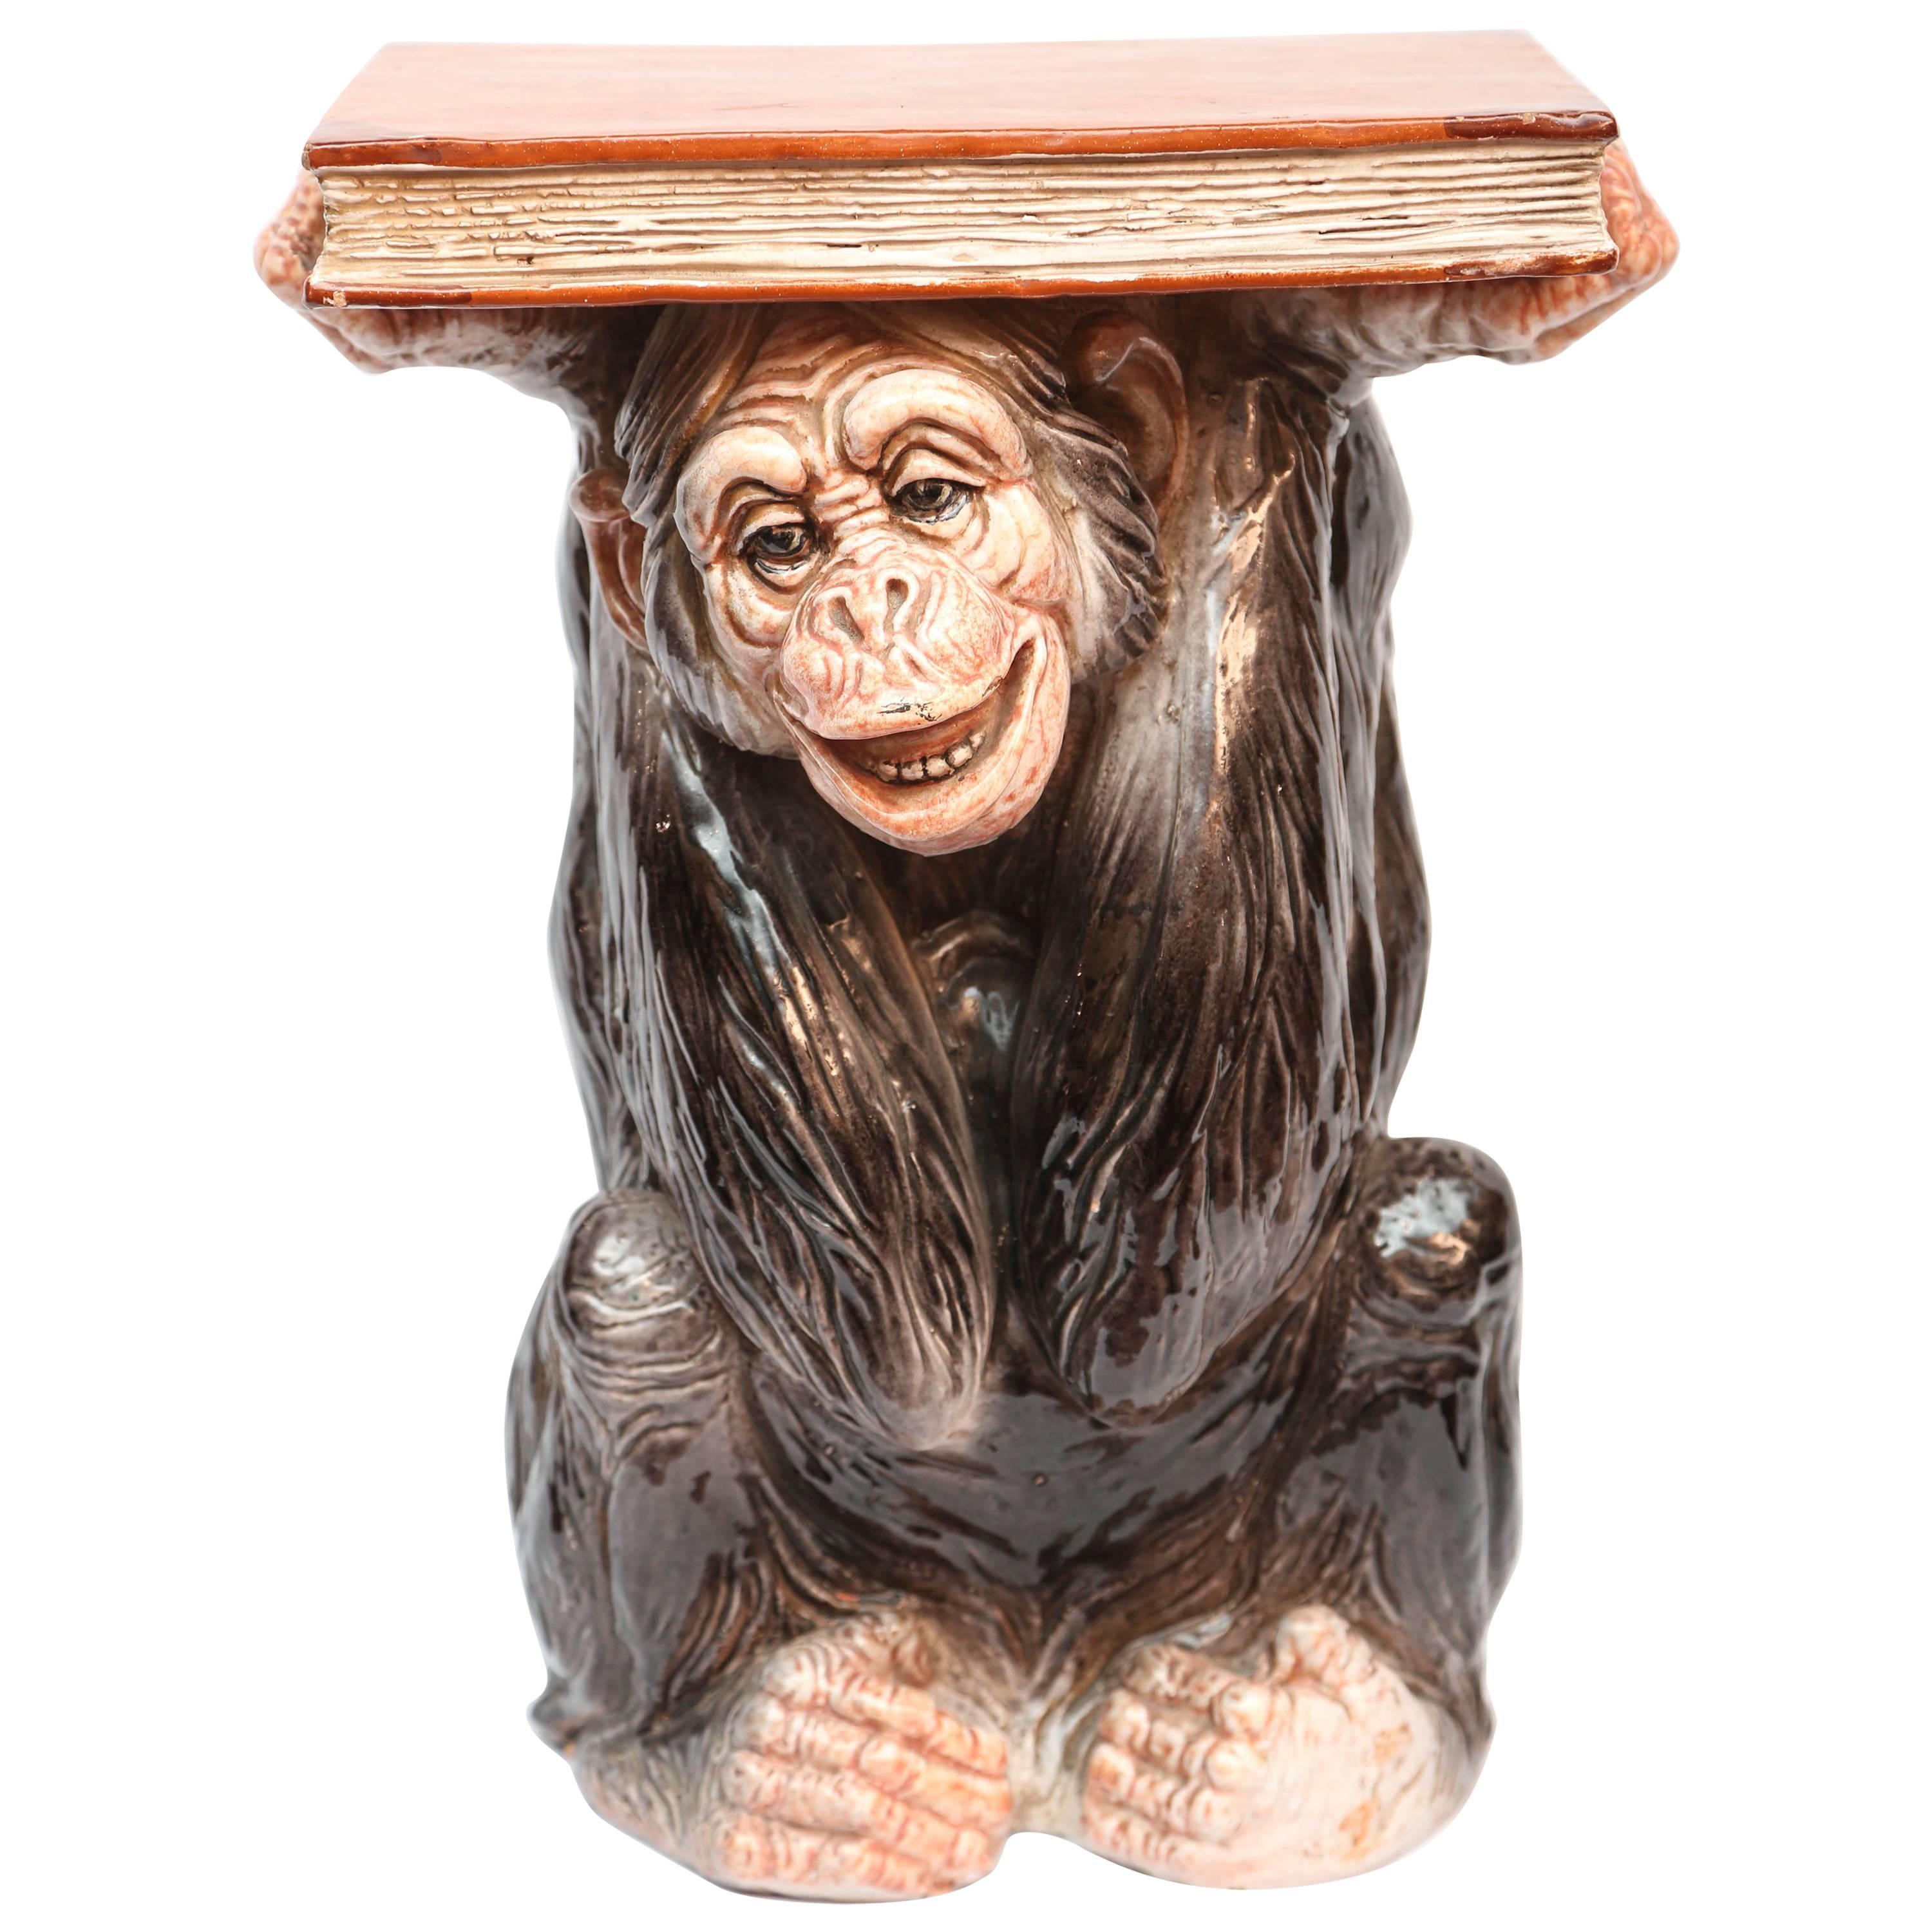 Whimsical Terra Cotta "Monkey" Table